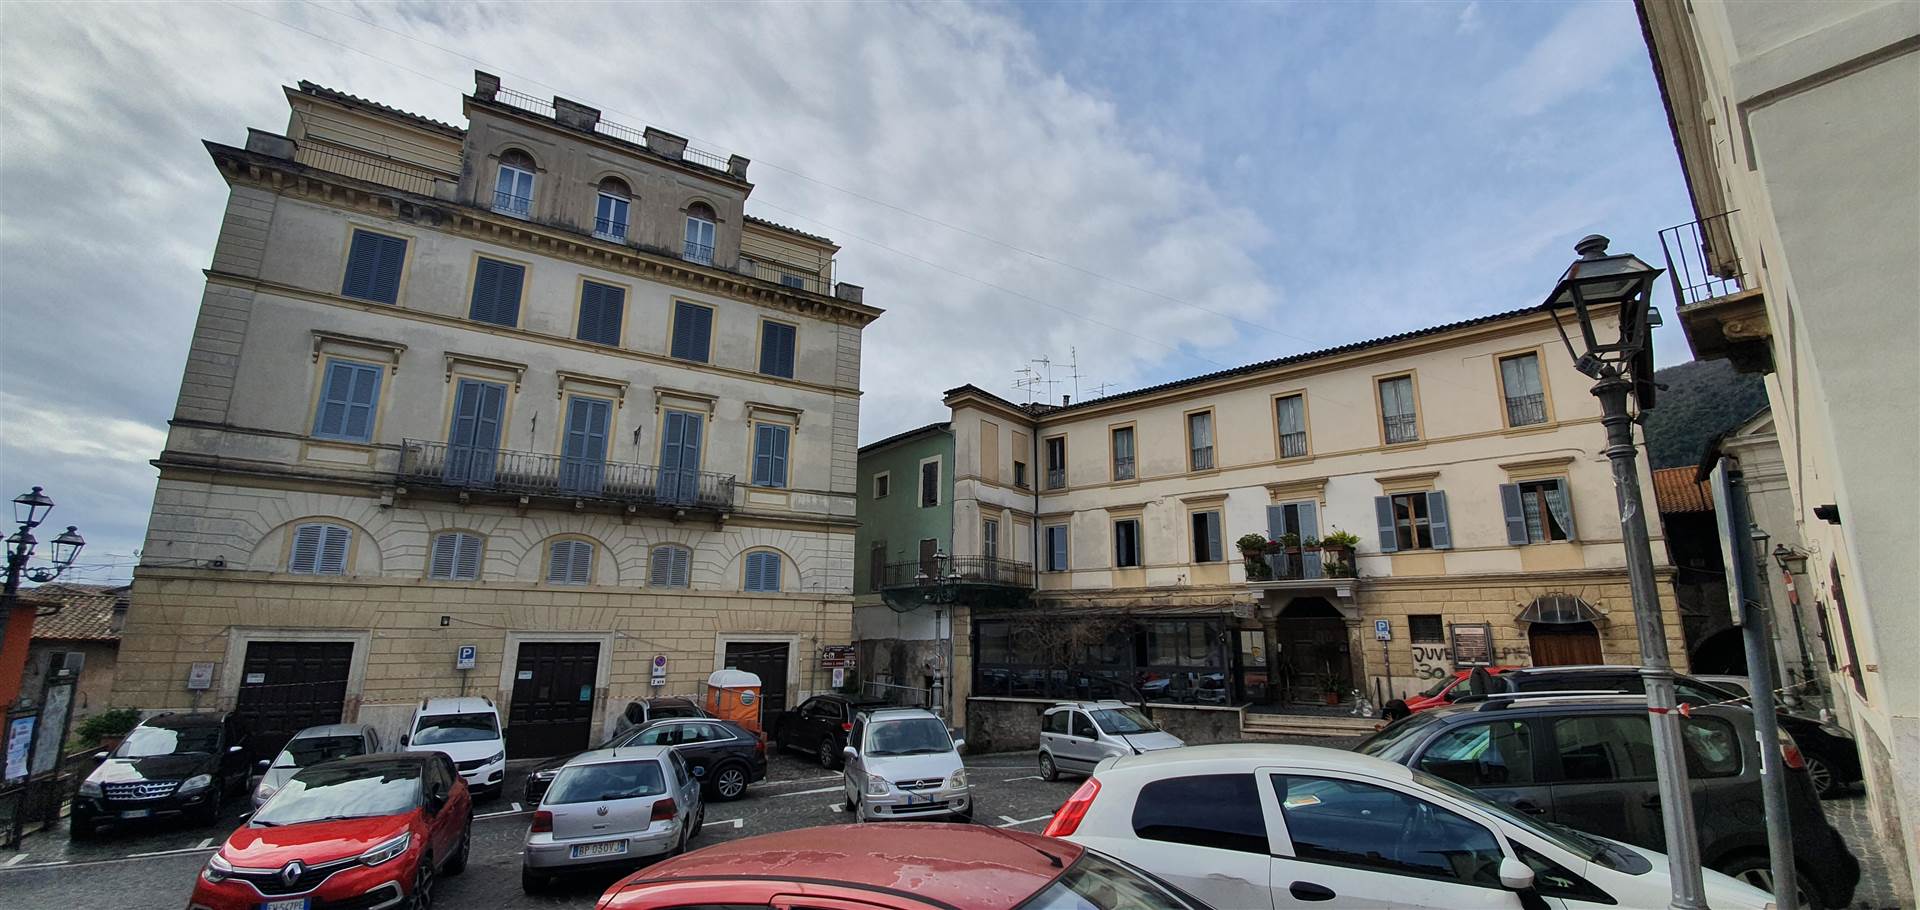 Appartamento in affitto a Genazzano, 3 locali, prezzo € 400 | PortaleAgenzieImmobiliari.it